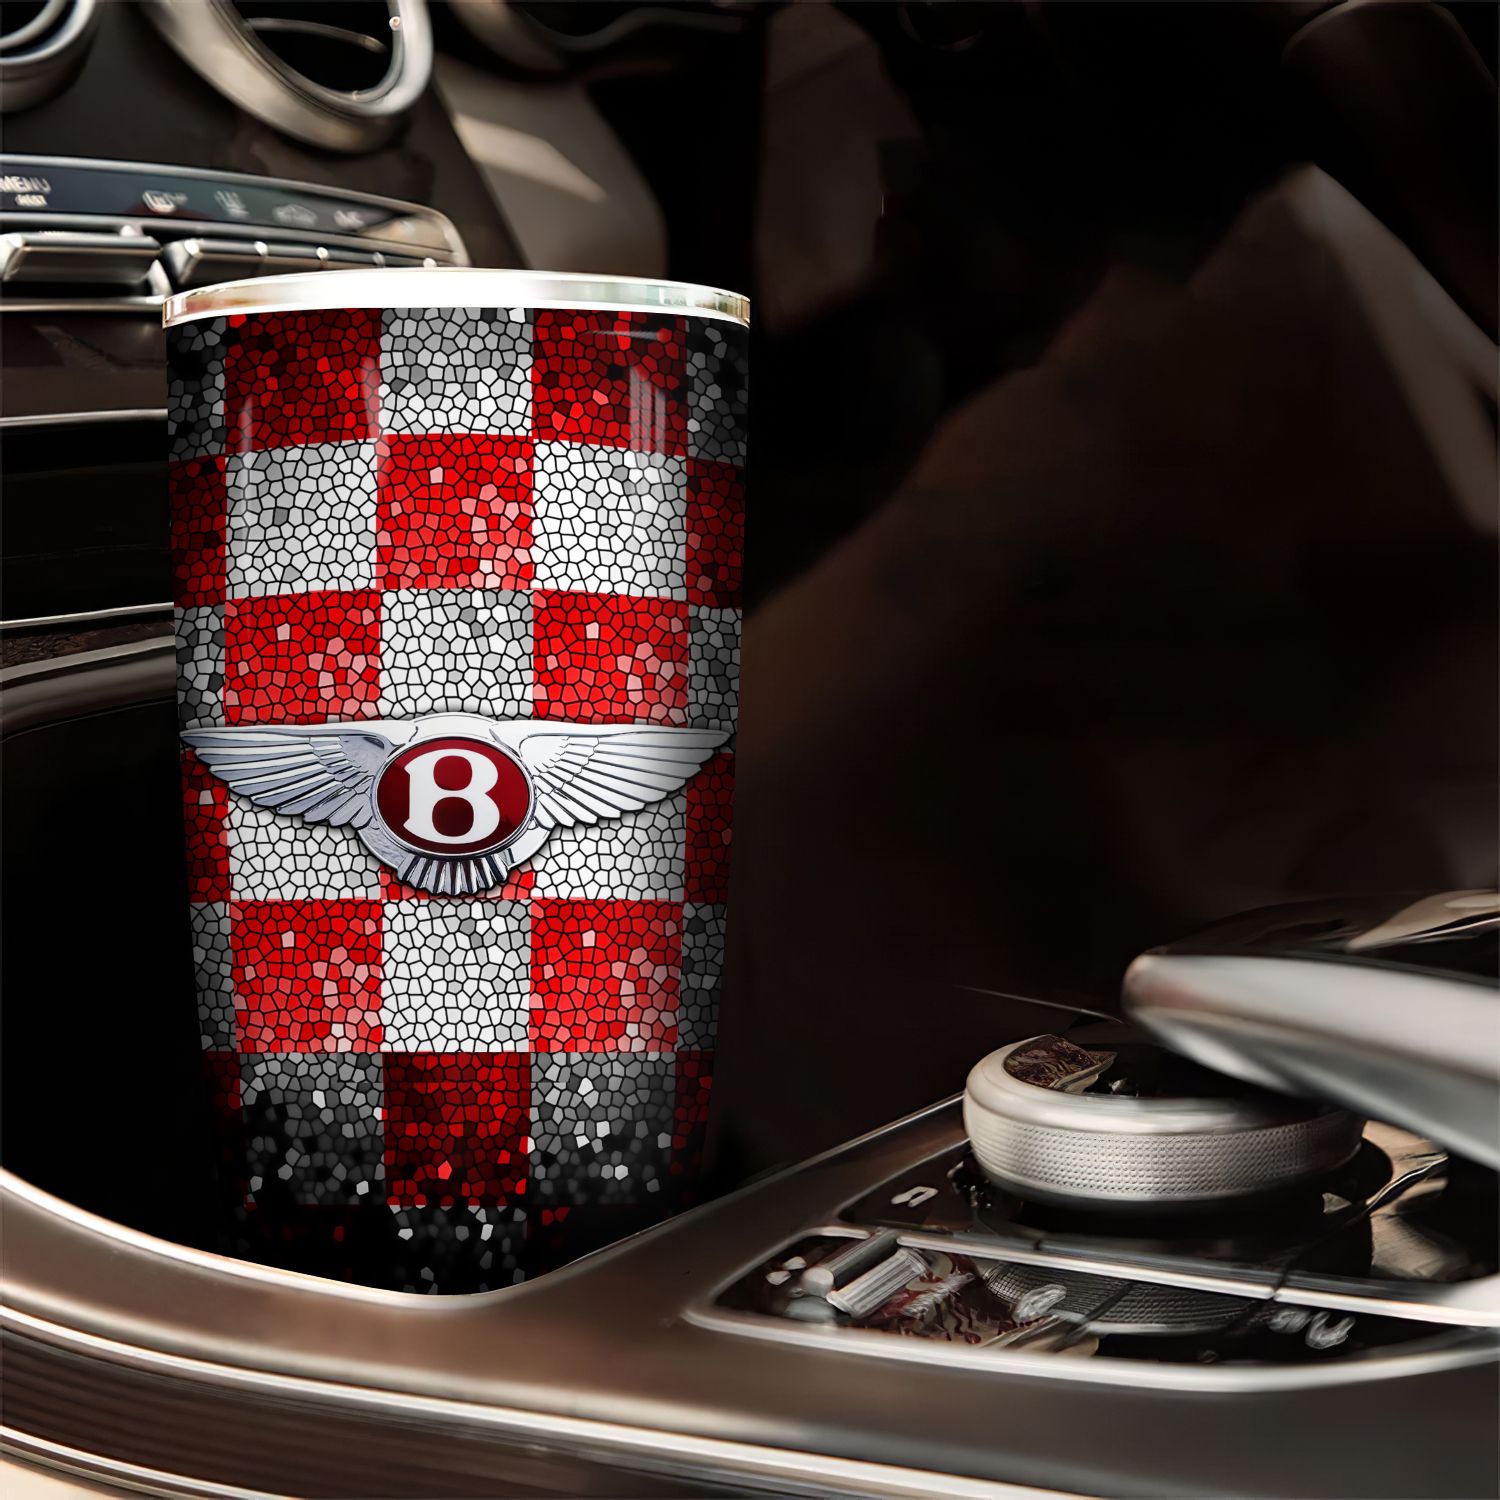  Logo xe oto Bentley Go Drink Cốc Giữ Nhiệt 600ml In tên, hình ảnh theo yêu cầu 